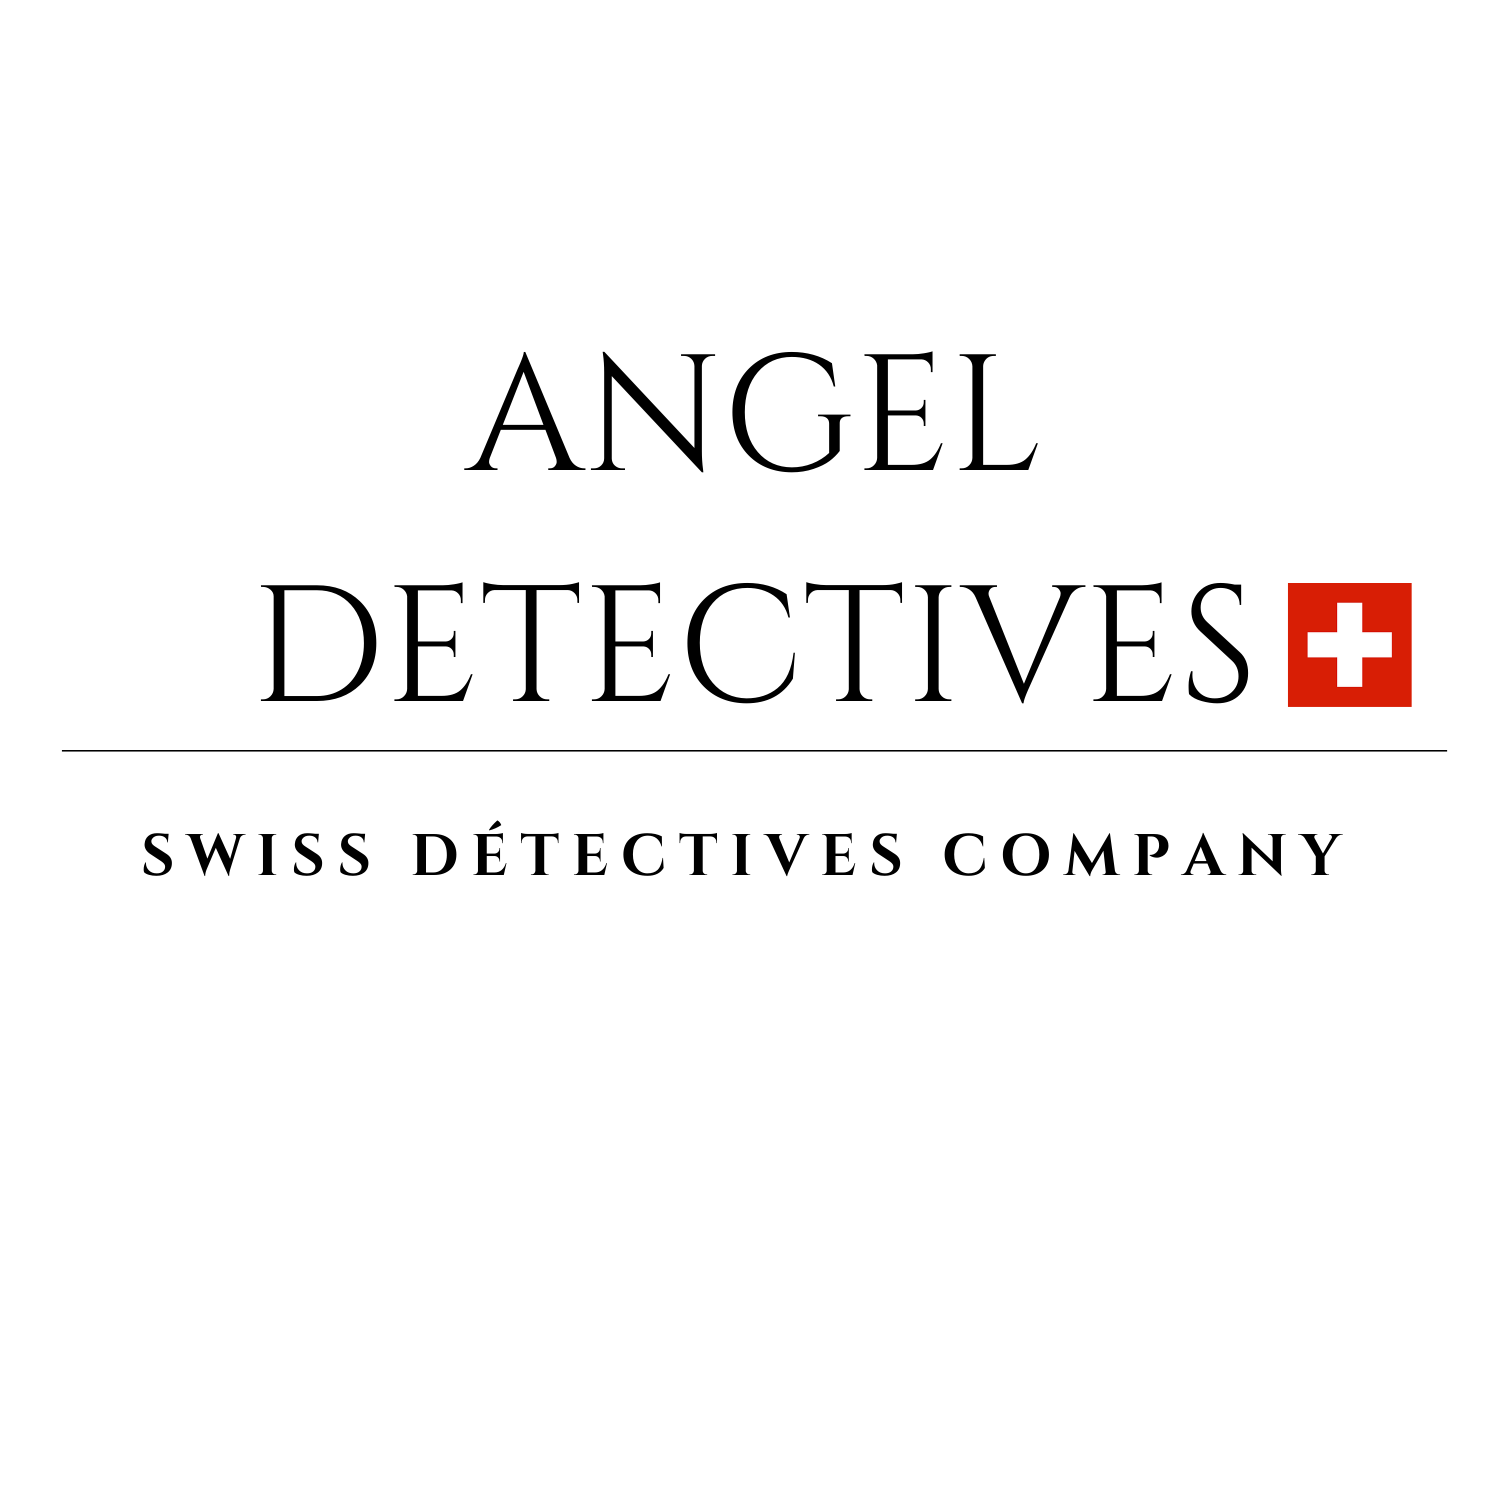 Agence de détectives privés basée à Genève, ANGEL DETECTIVES regroupe des enquêteurs chevronnés